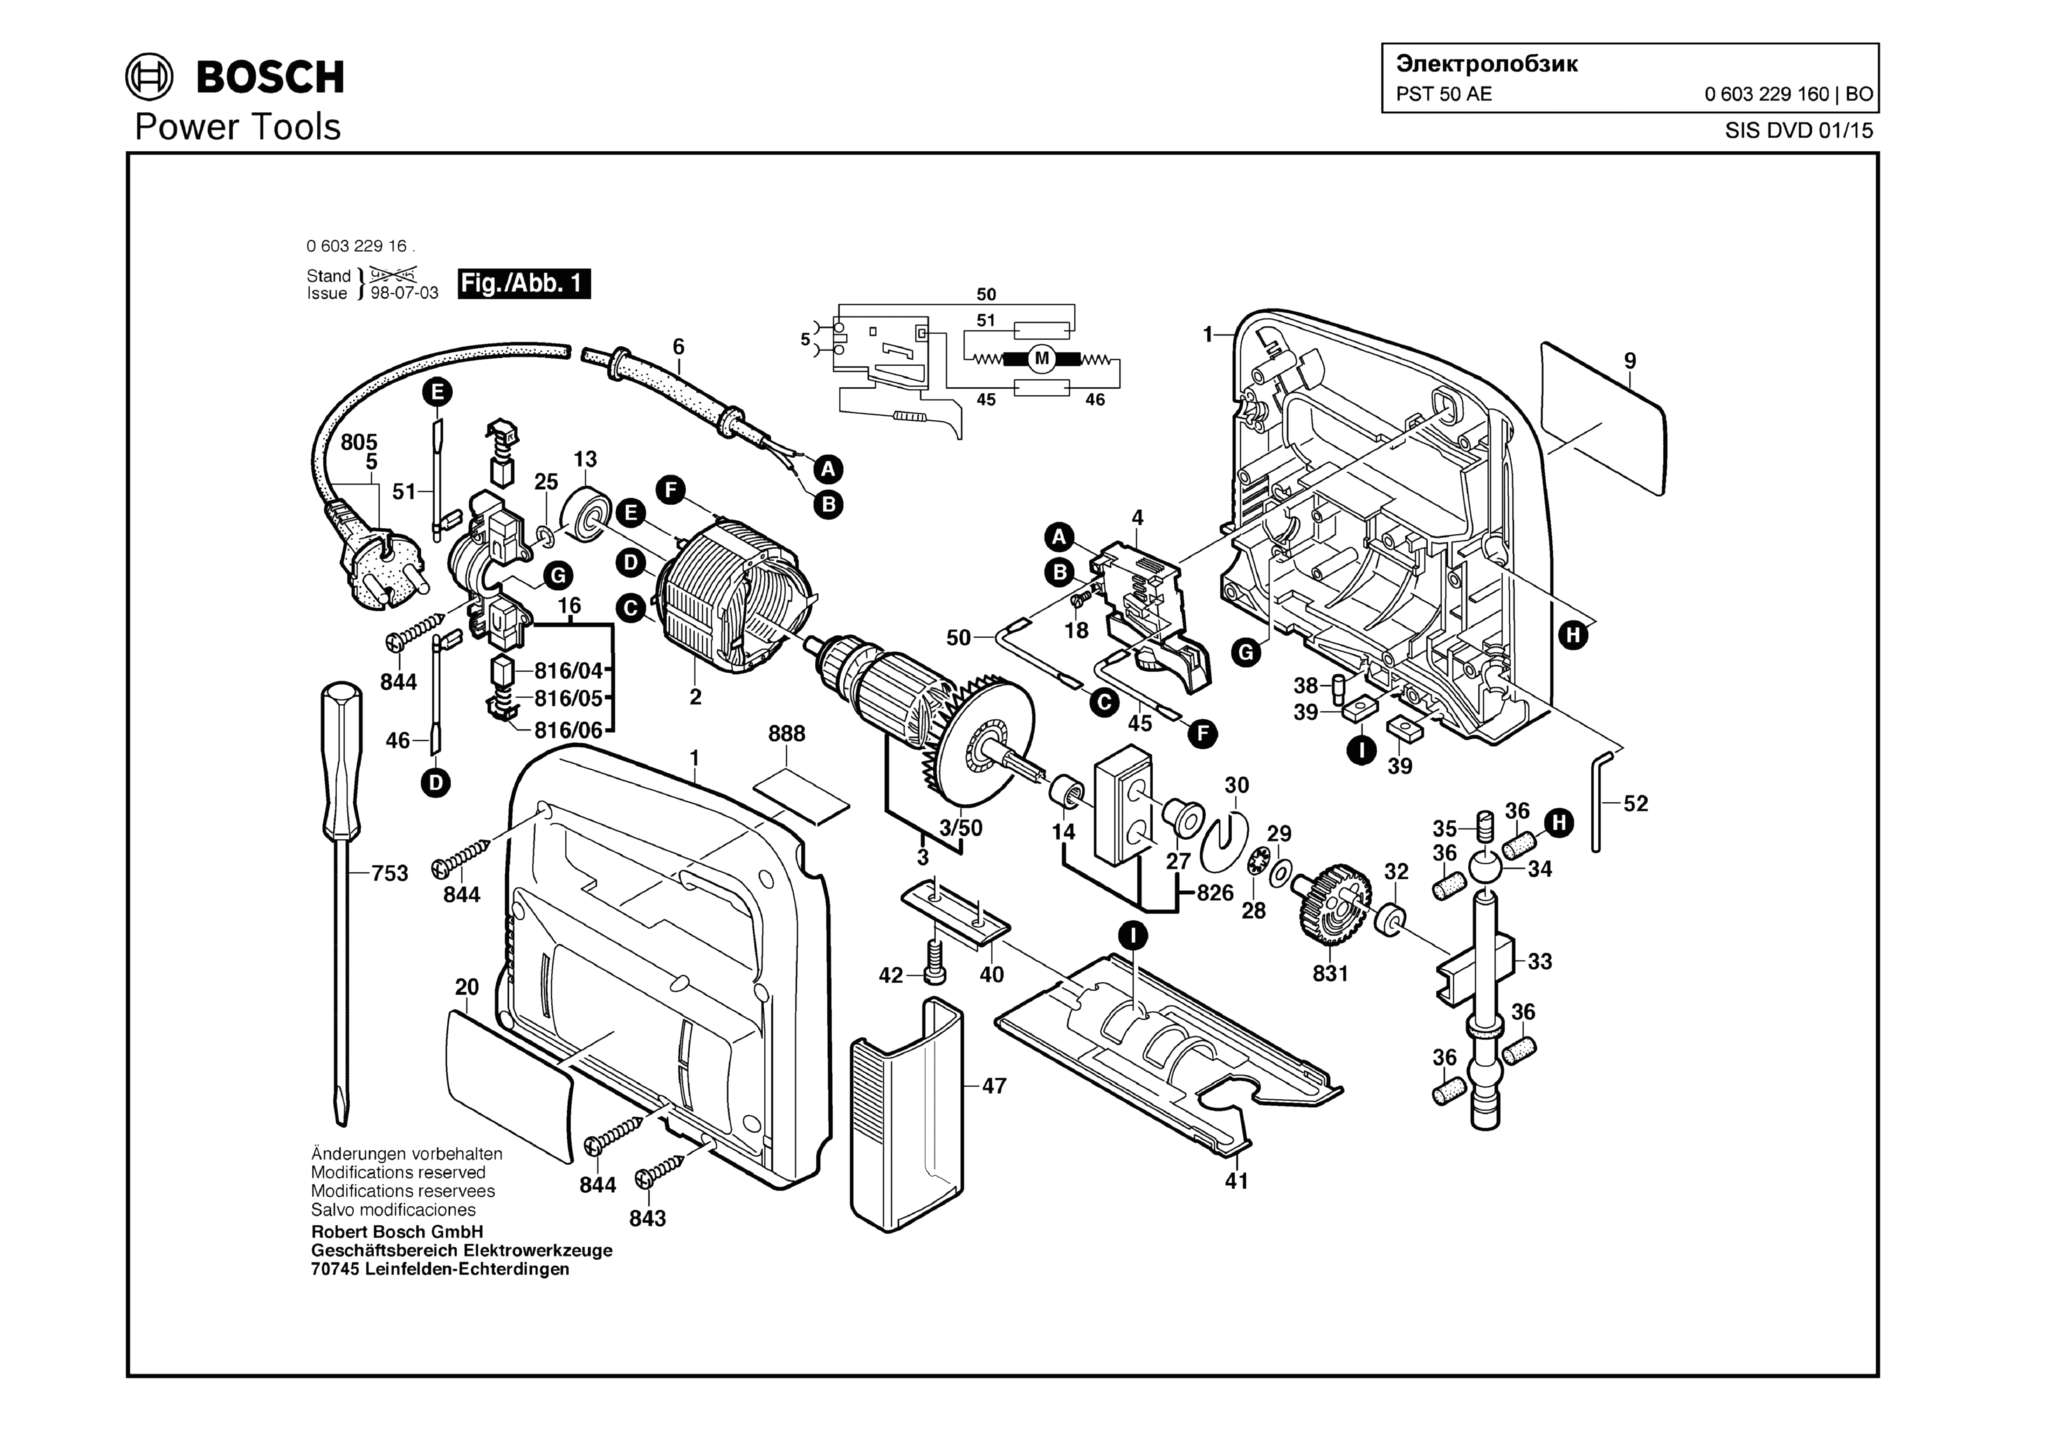 Запчасти, схема и деталировка Bosch PST 50 AE (ТИП 0603229160)